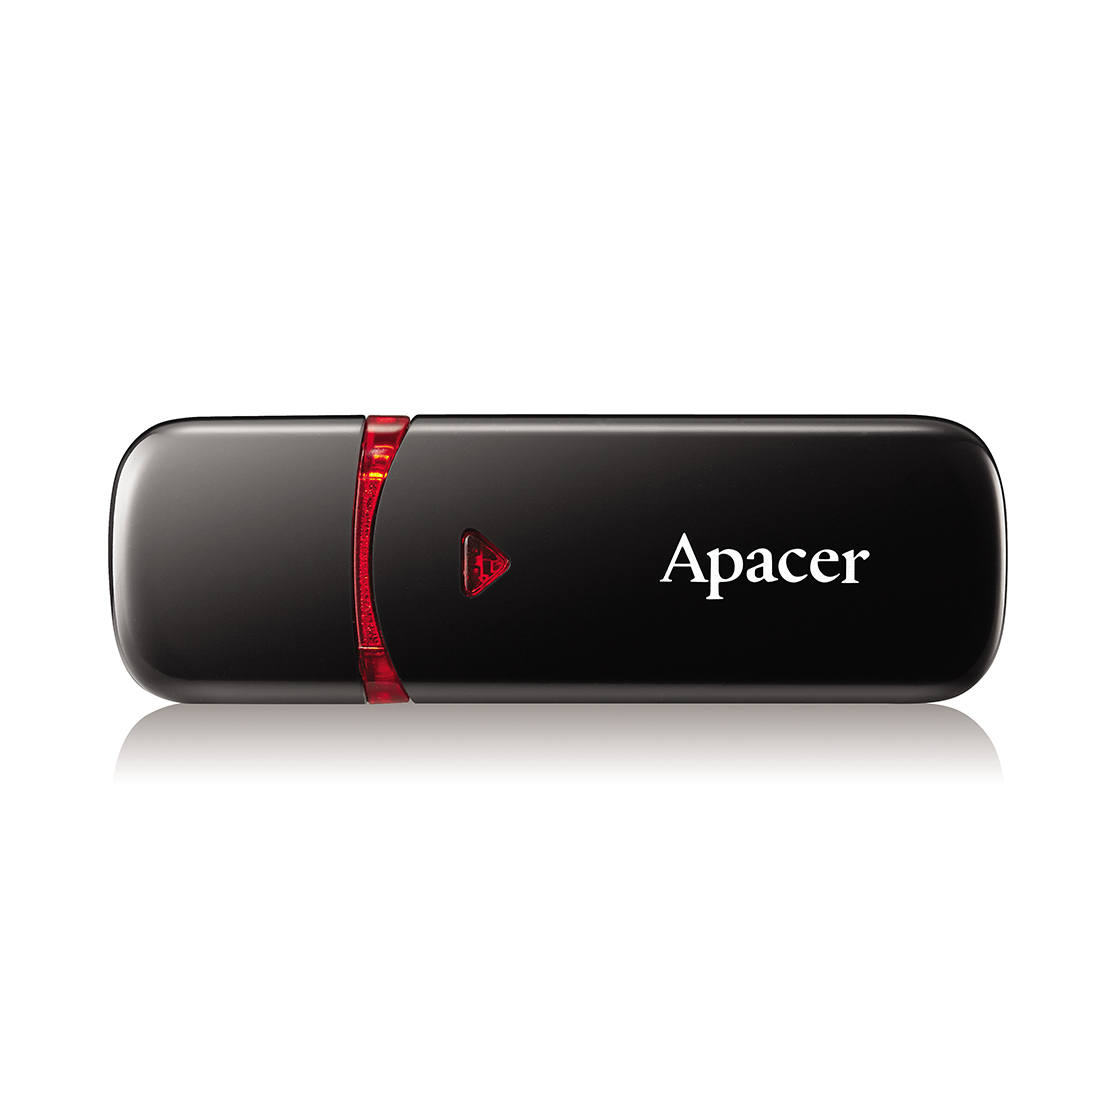 картинка USB флеш-накопитель Apacer AH333 32GB Чёрный от магазина itmag.kz